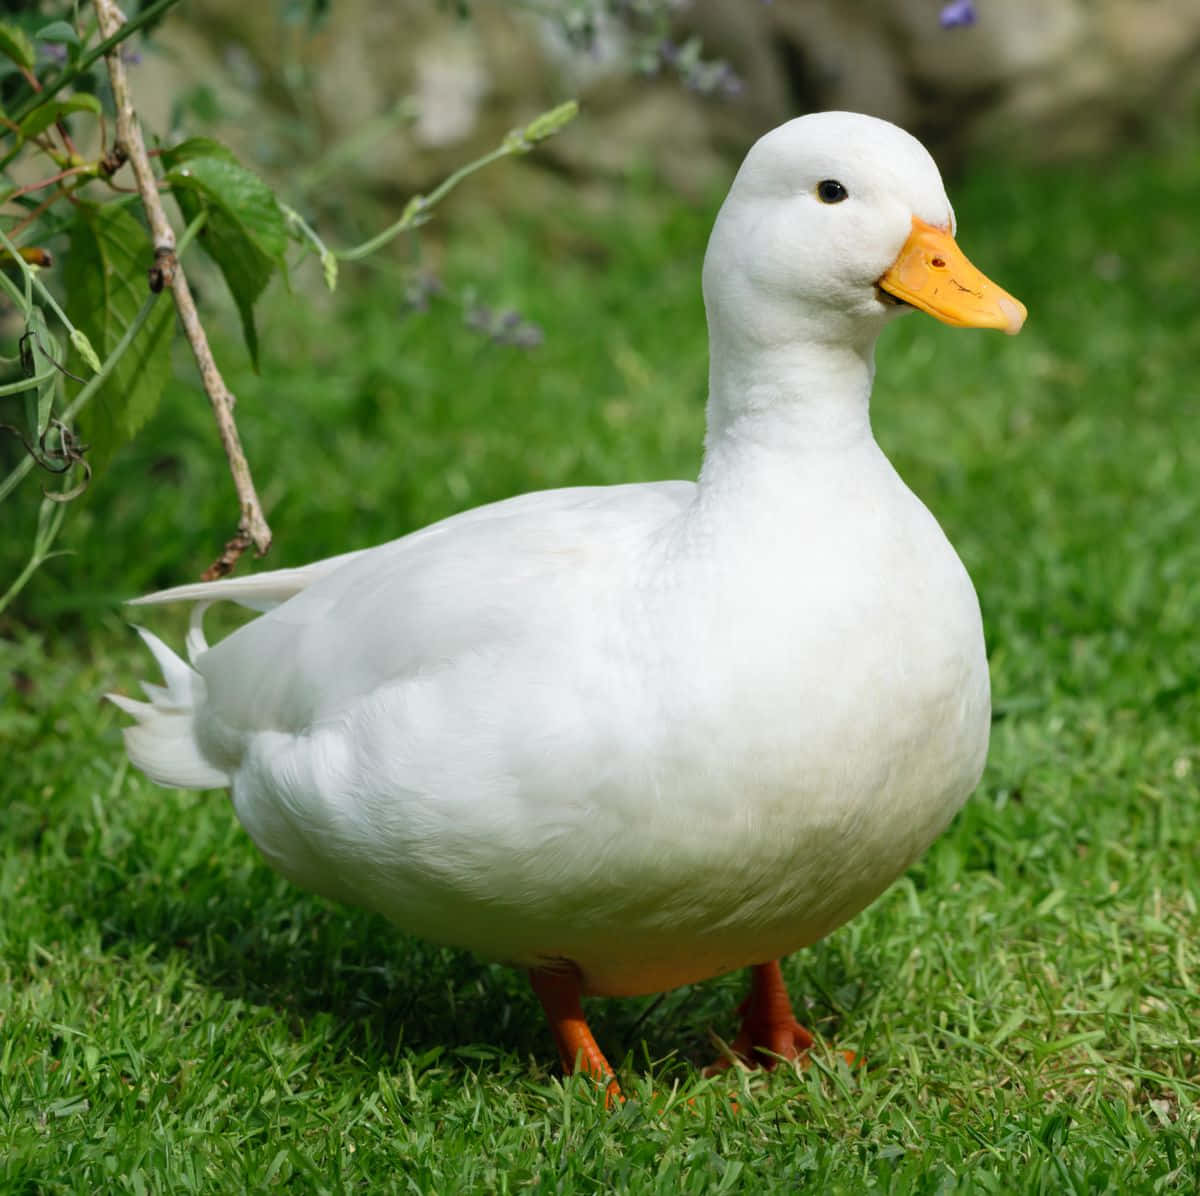 Quack Quack - A yellow duck enjoys a swim in a pond